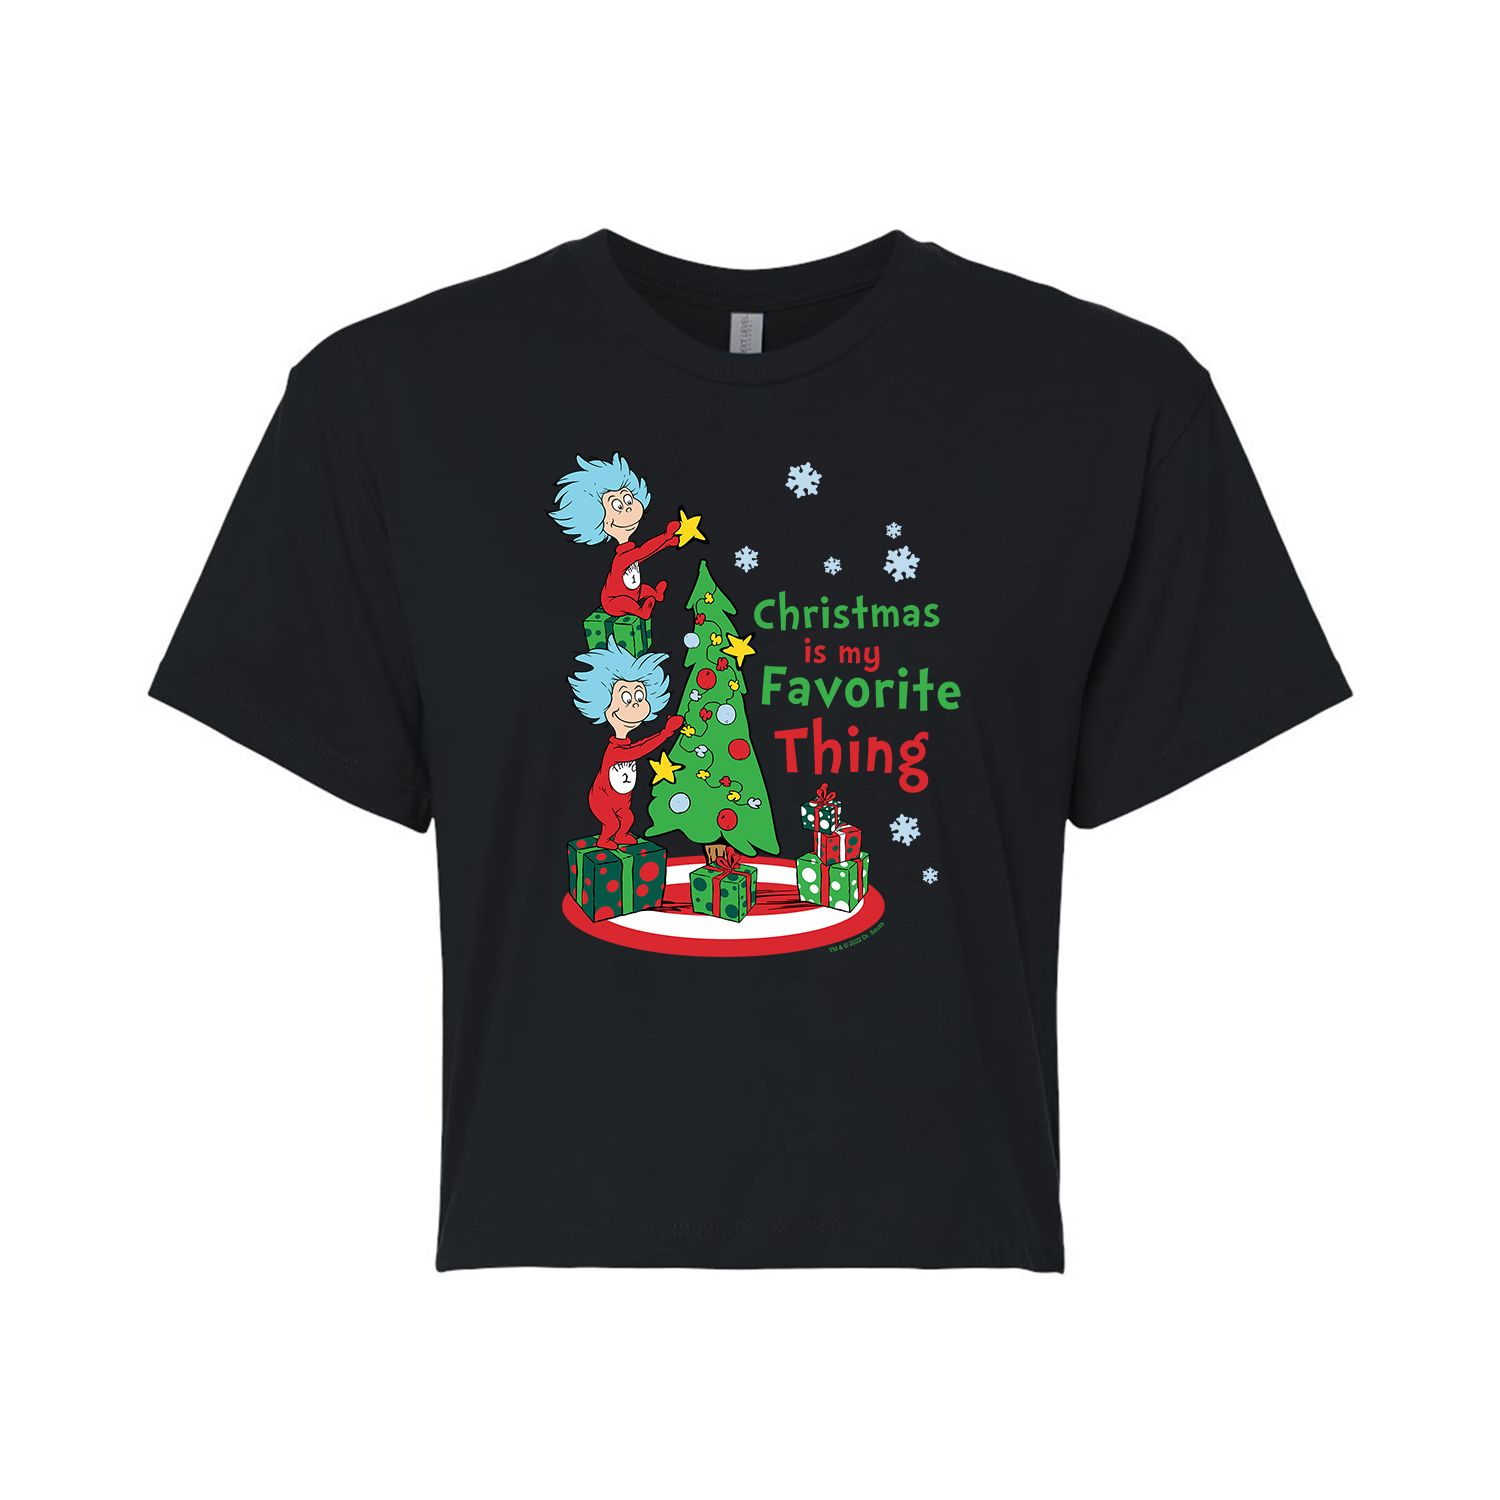 цена Укороченная футболка с рисунком «Доктор Сьюз» для юниоров «Рождественская любимая вещь» Licensed Character